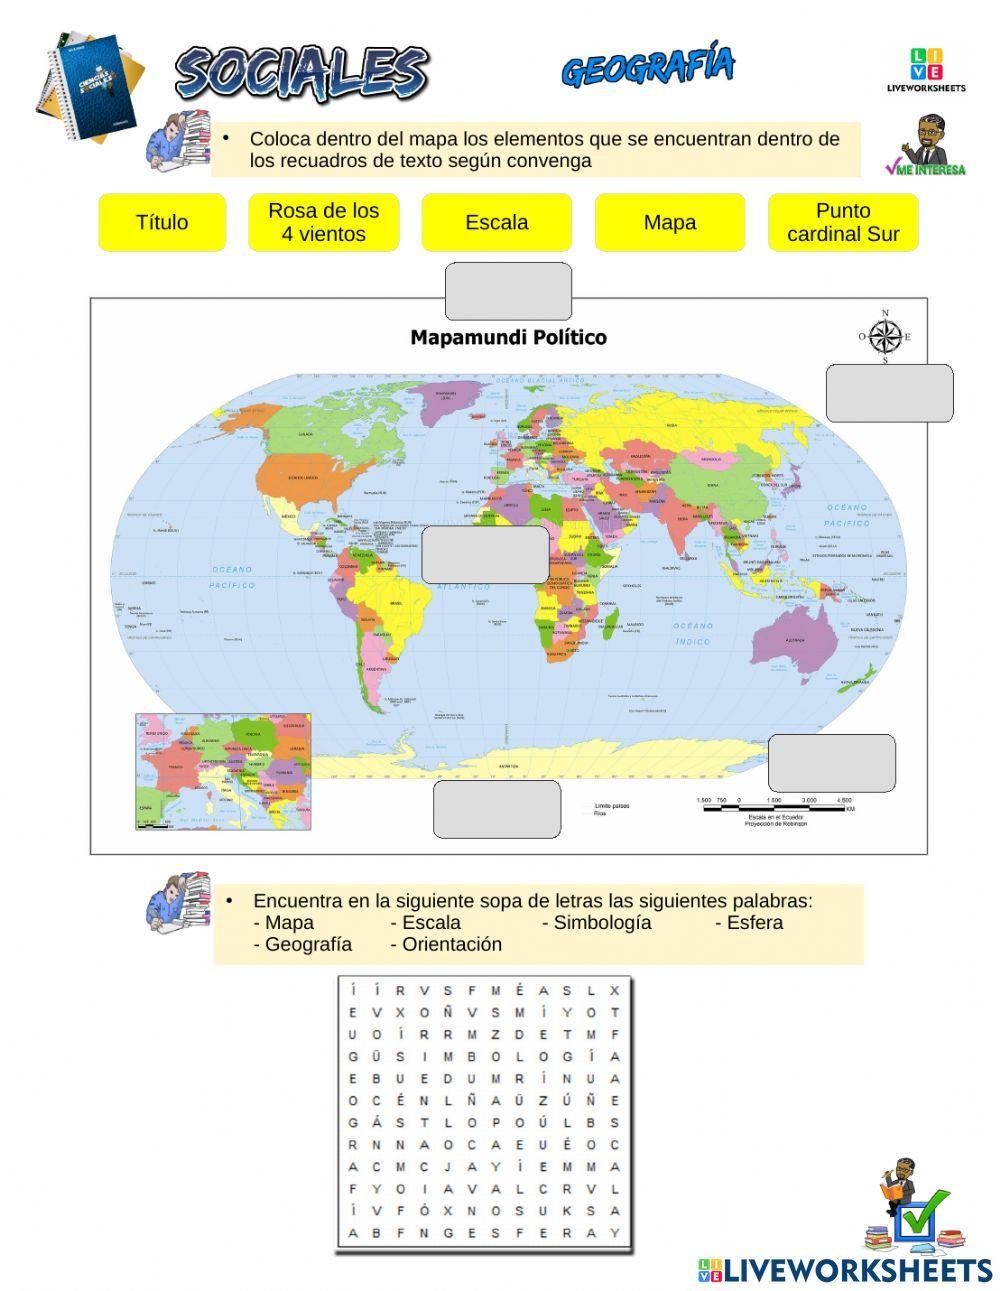 Geografía y Mapas